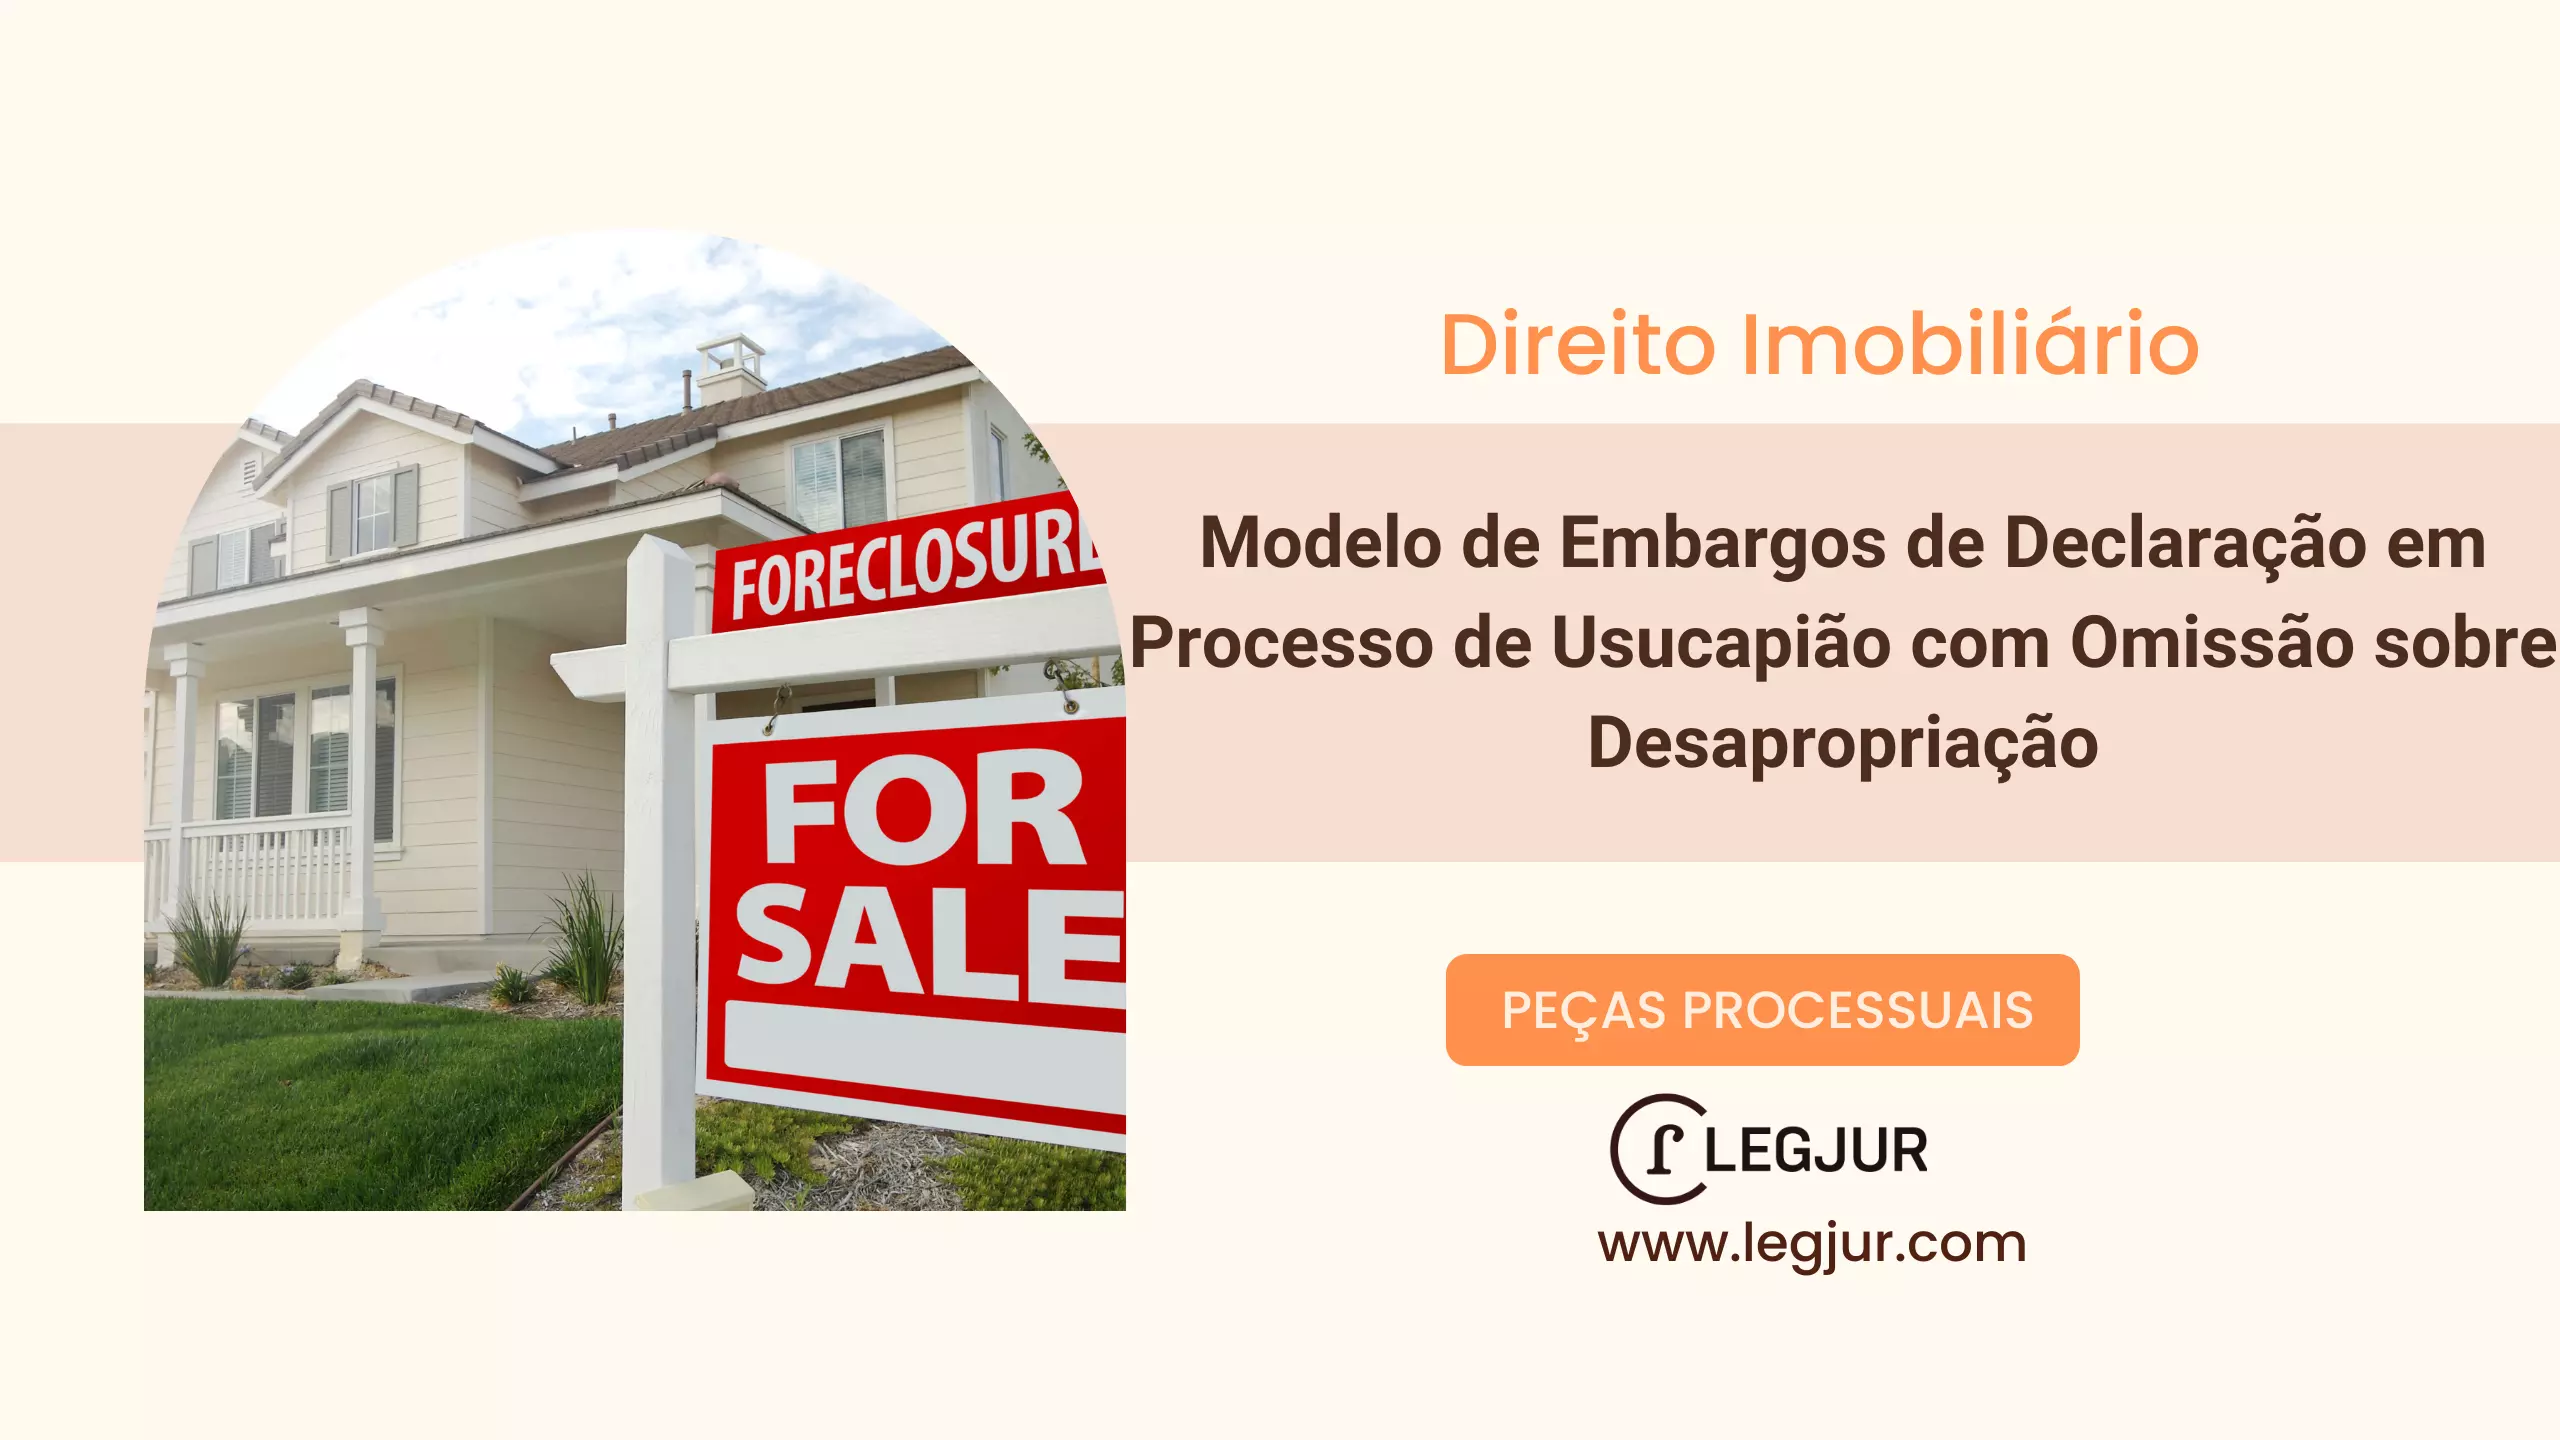 Modelo de Embargos de Declaração em Processo de Usucapião com Omissão sobre Desapropriação